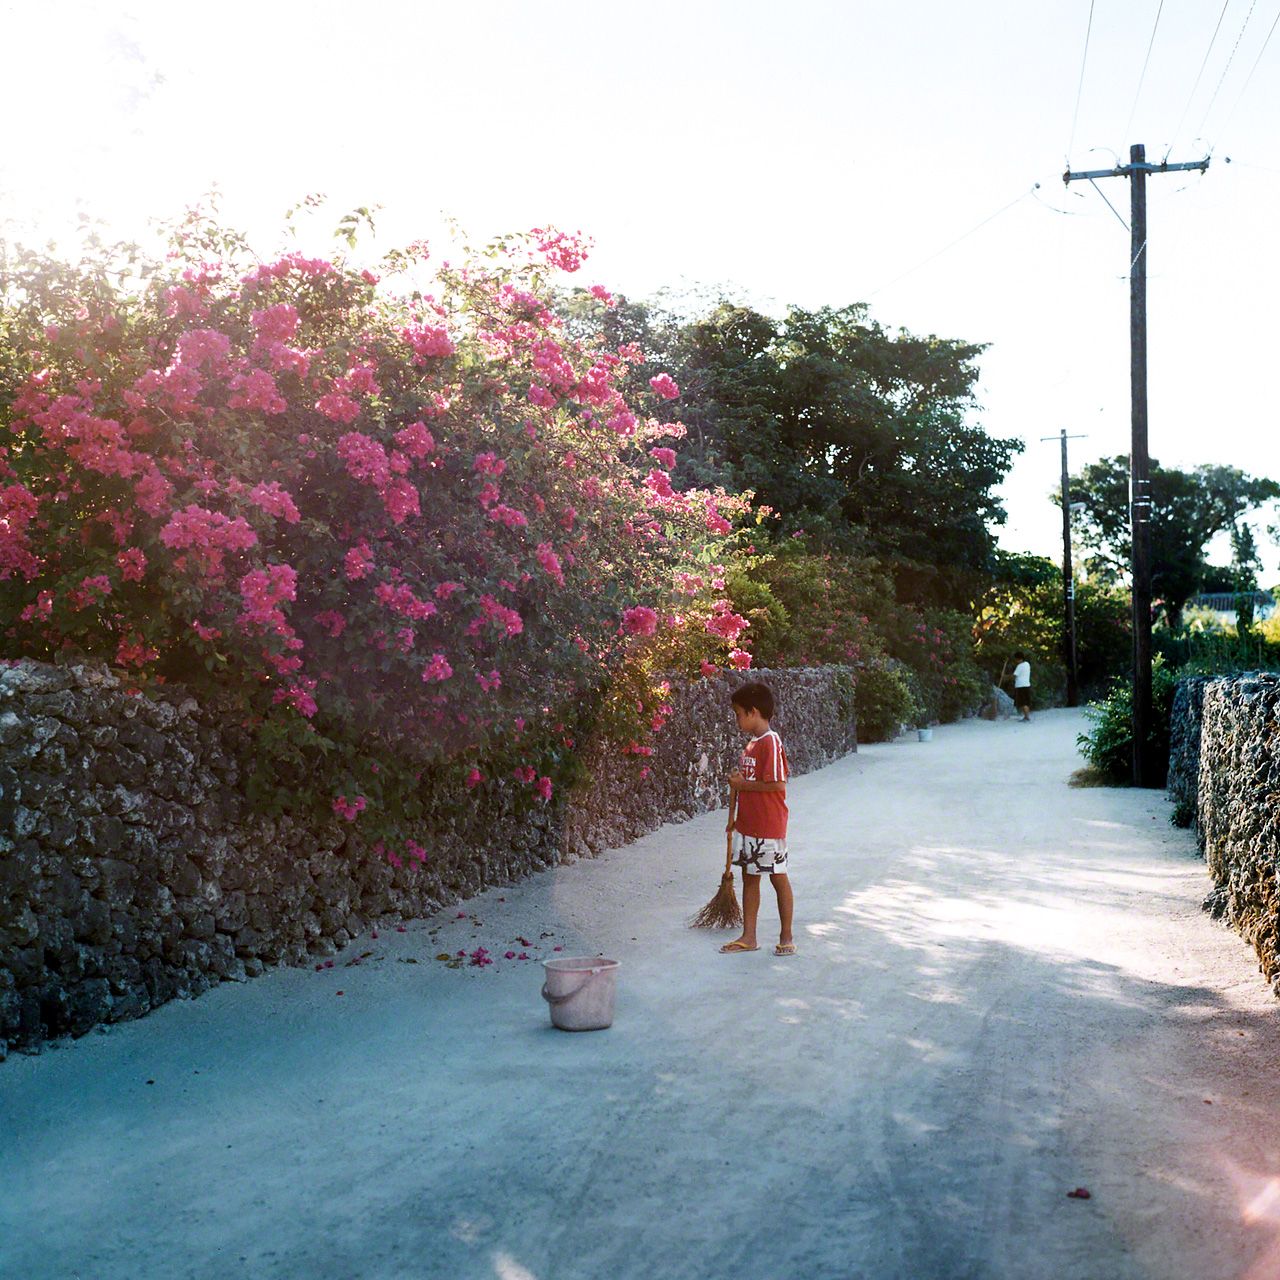 竹富岛，每天早晨清扫白砂小道的少年